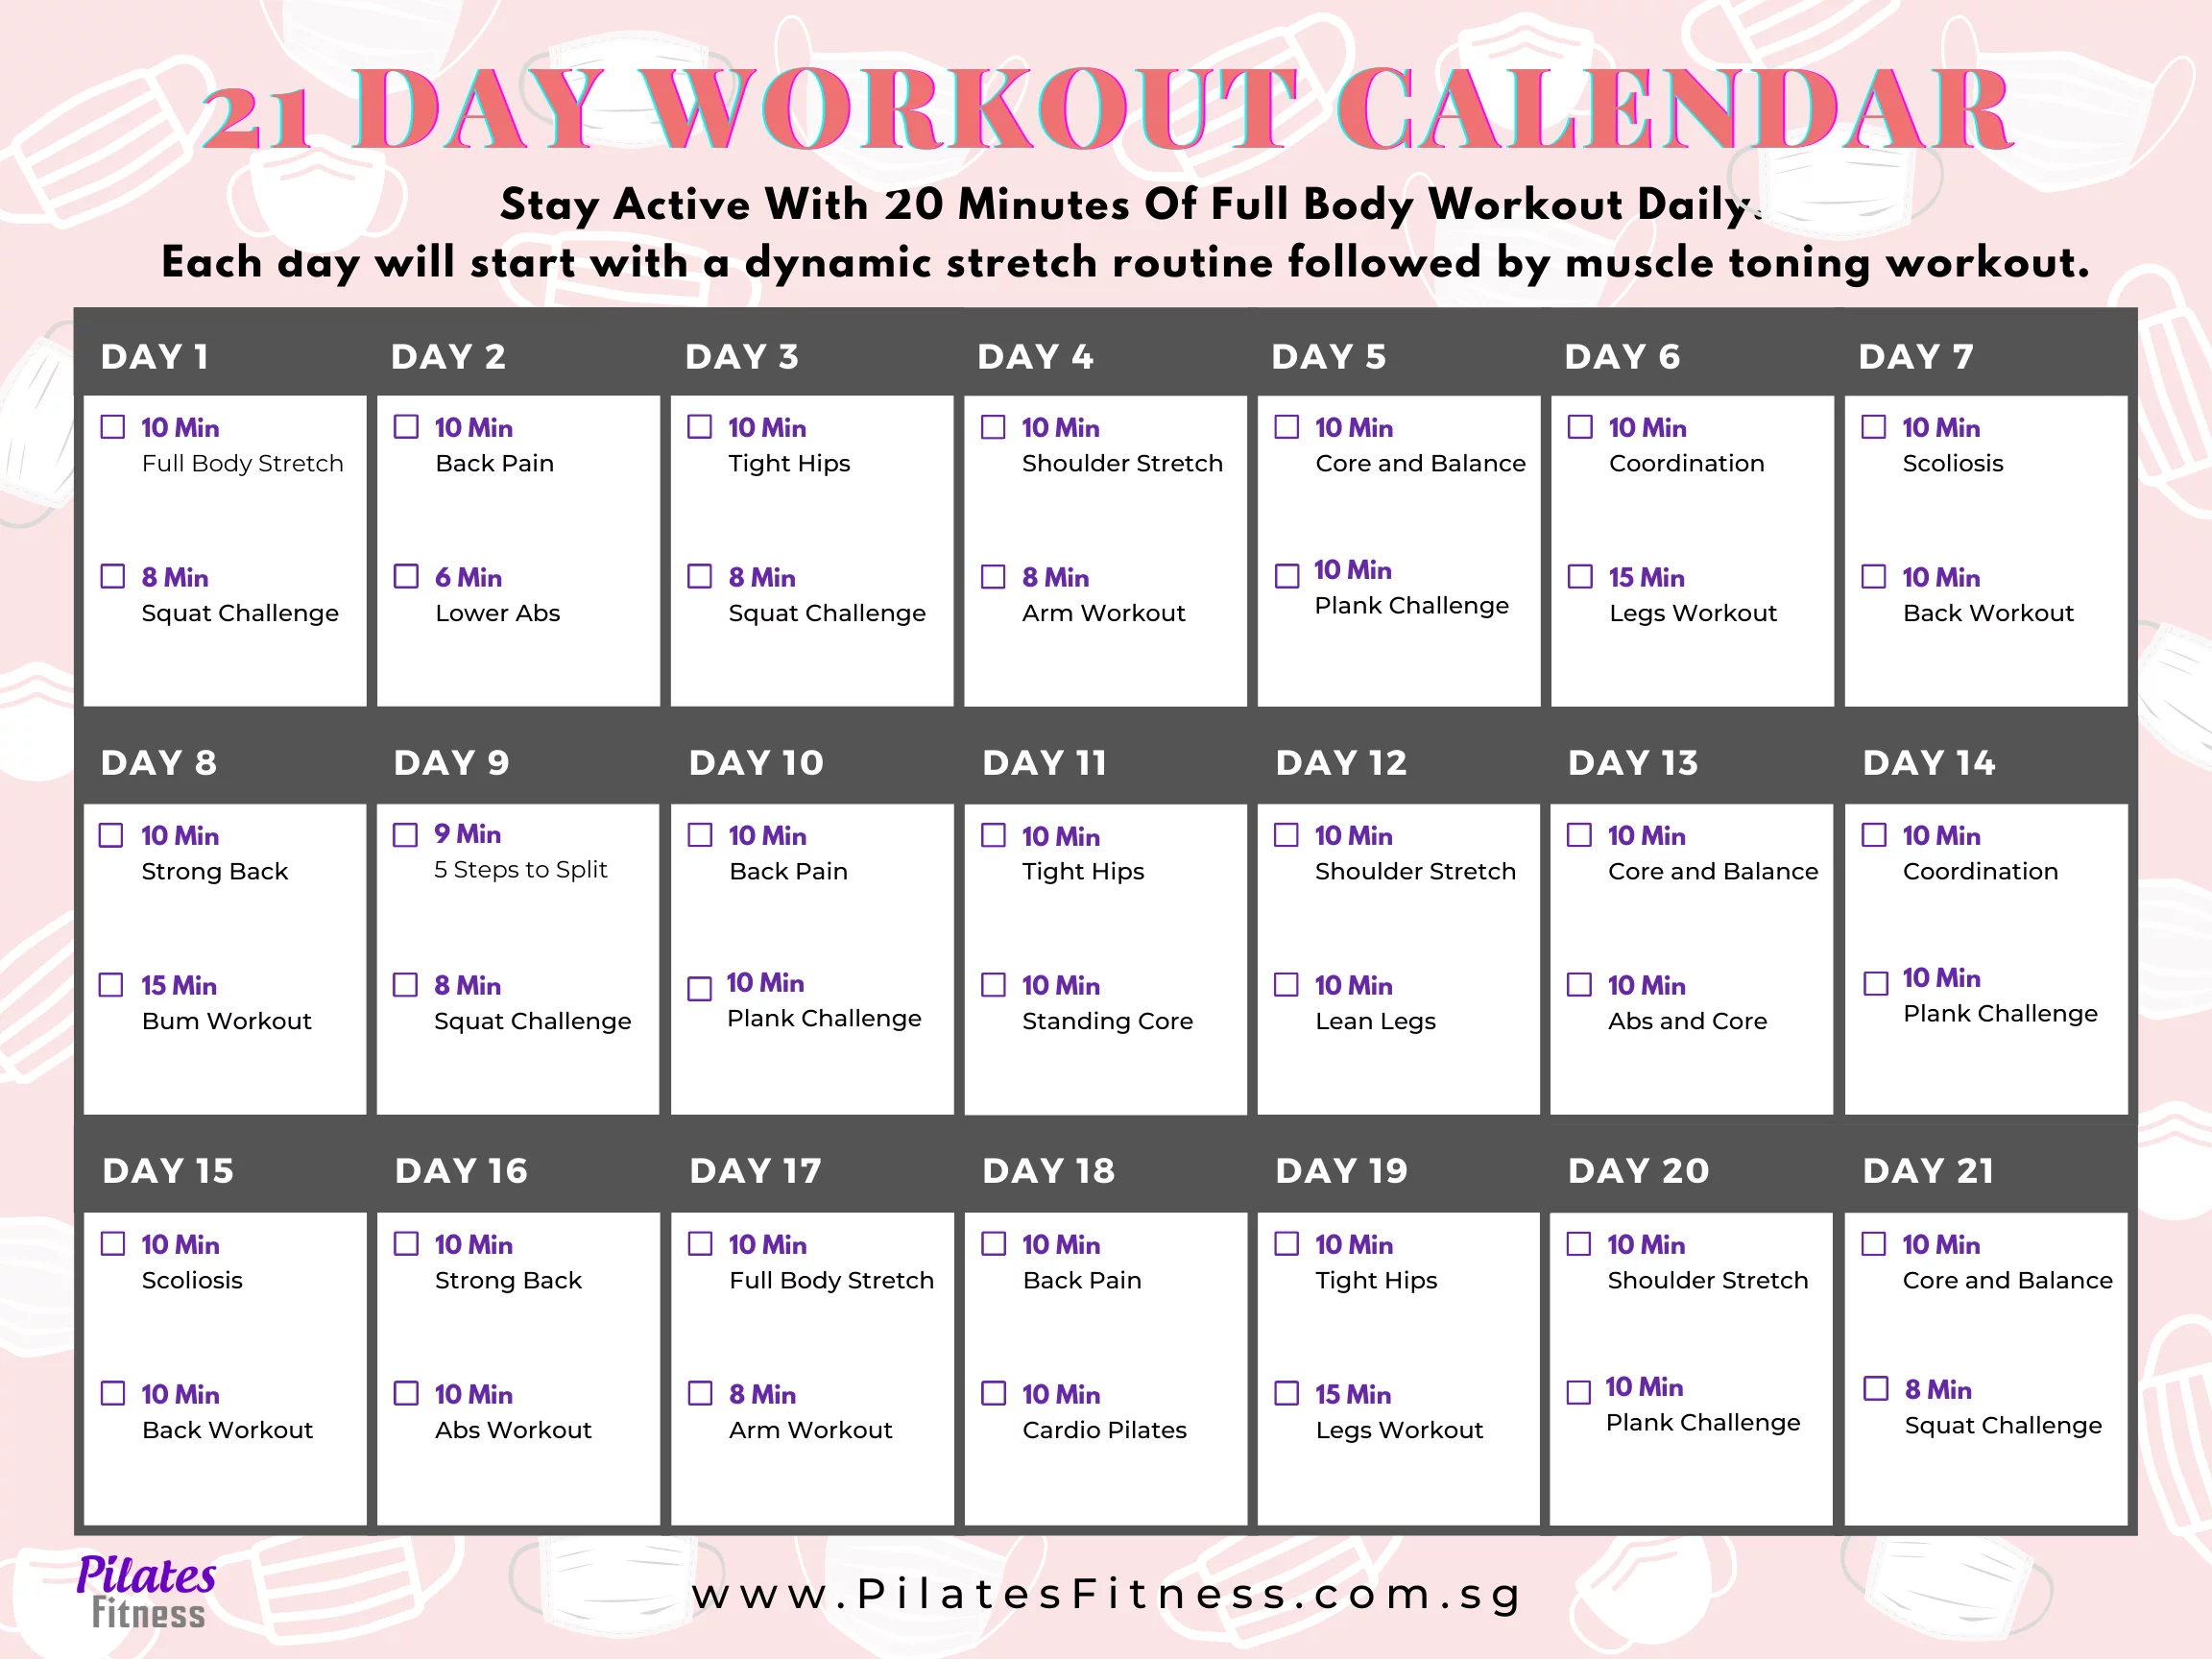 21 Day Full Body Workout Calendar - FREE Mat Pilates Online